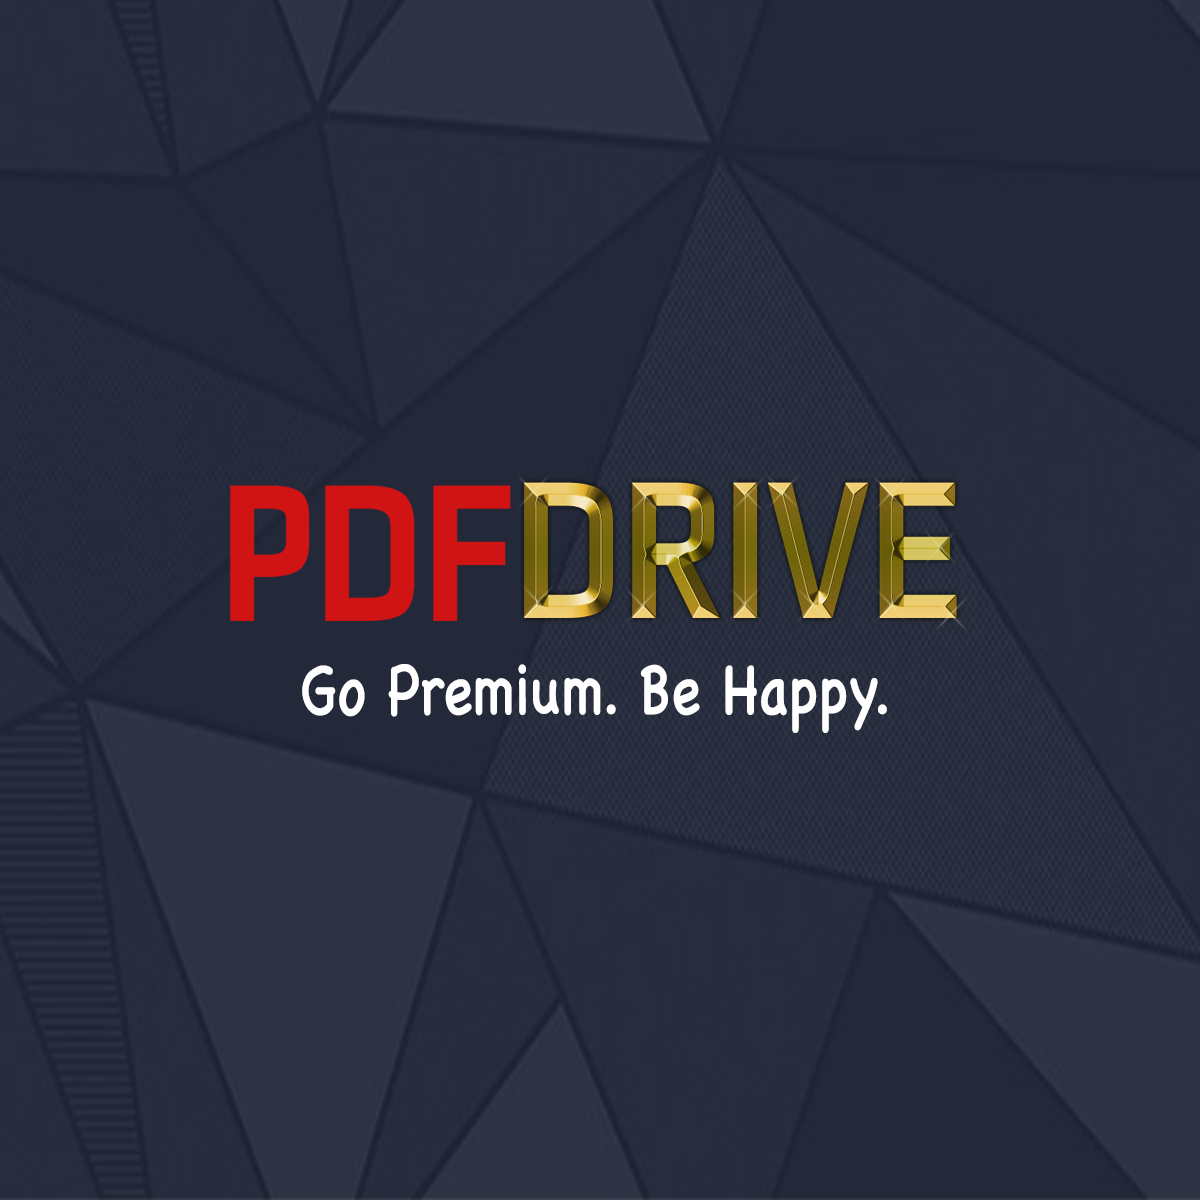 Qu'est-il arrivé à PDF Drive?